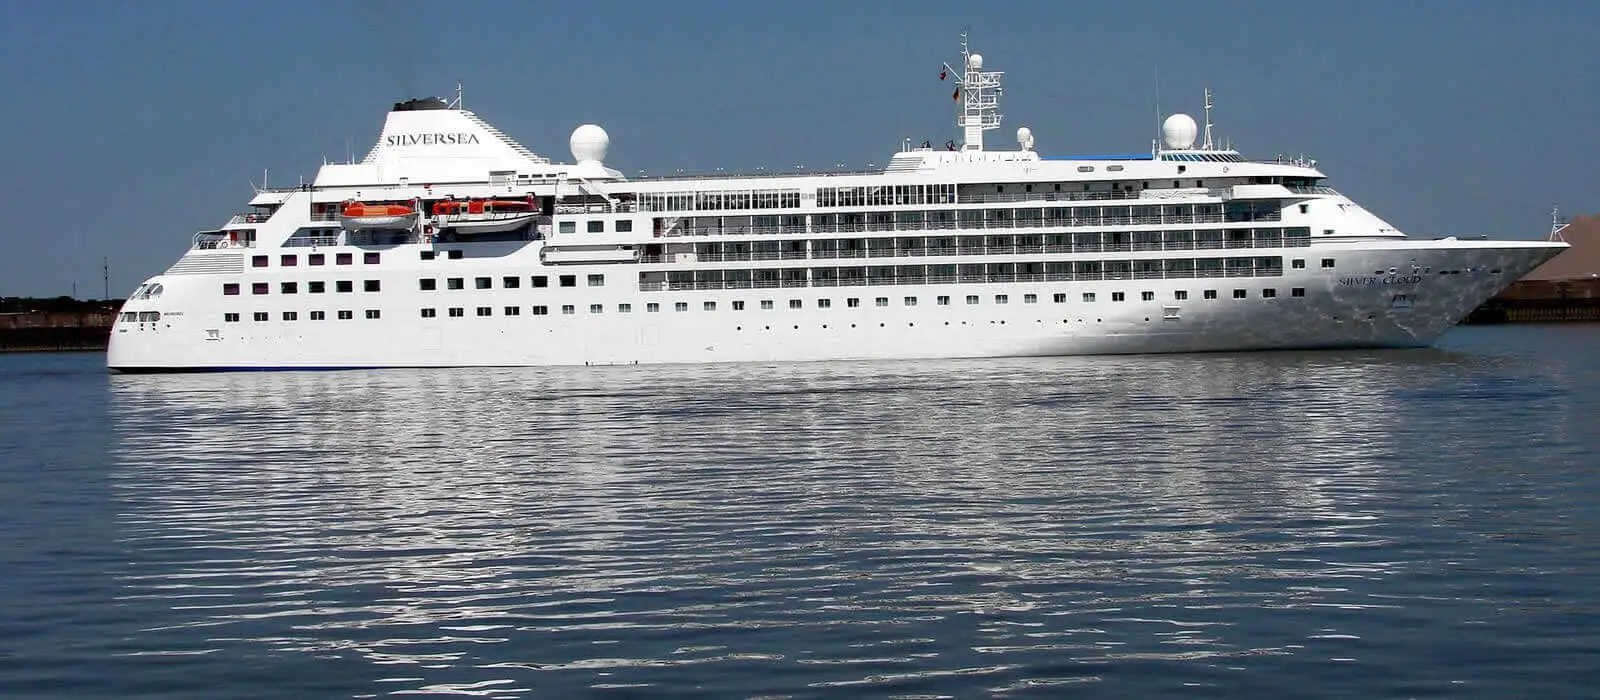 silversea cruise